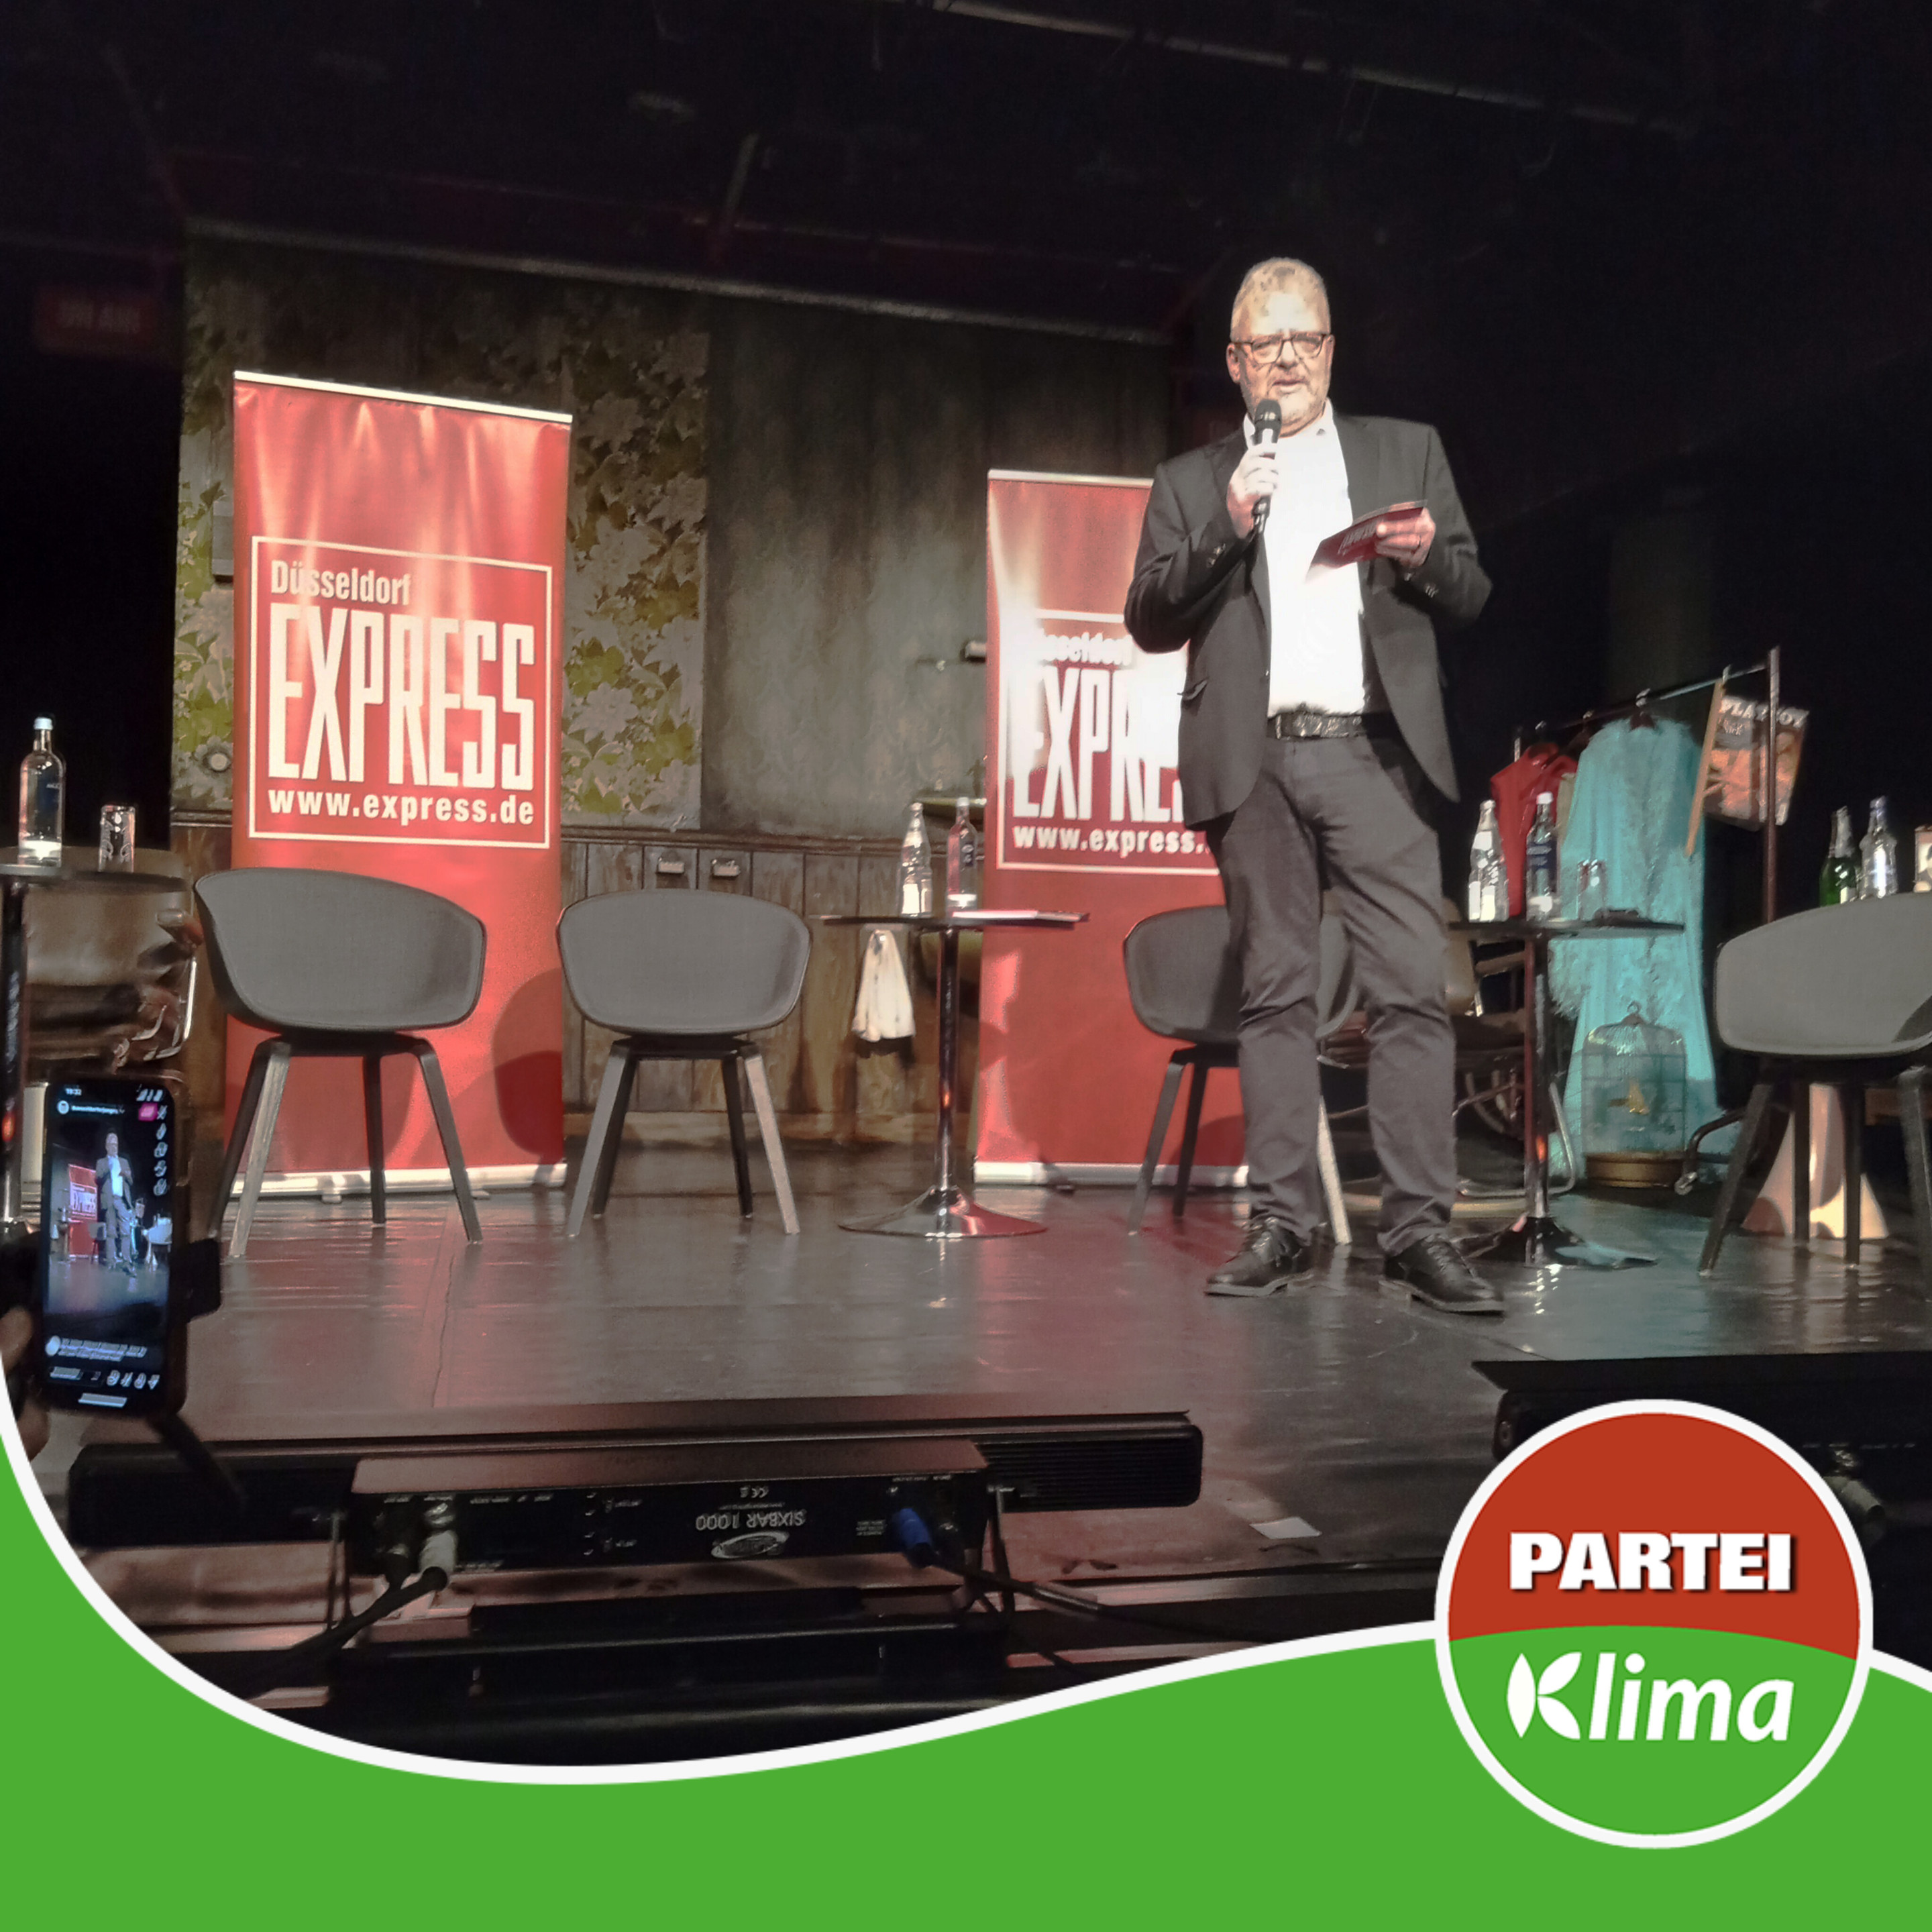 Zu sehen ist Herr Michael Kerst, der Moderator des EXPRESSO Talks der Düsseldorfer EXPRESS Redaktion auf der Bühne des Theaters an der Kö. Hinter ihm befinden sich eine Stuhlreihe aus 5 Stühlen und die Banner des EXPRESS.